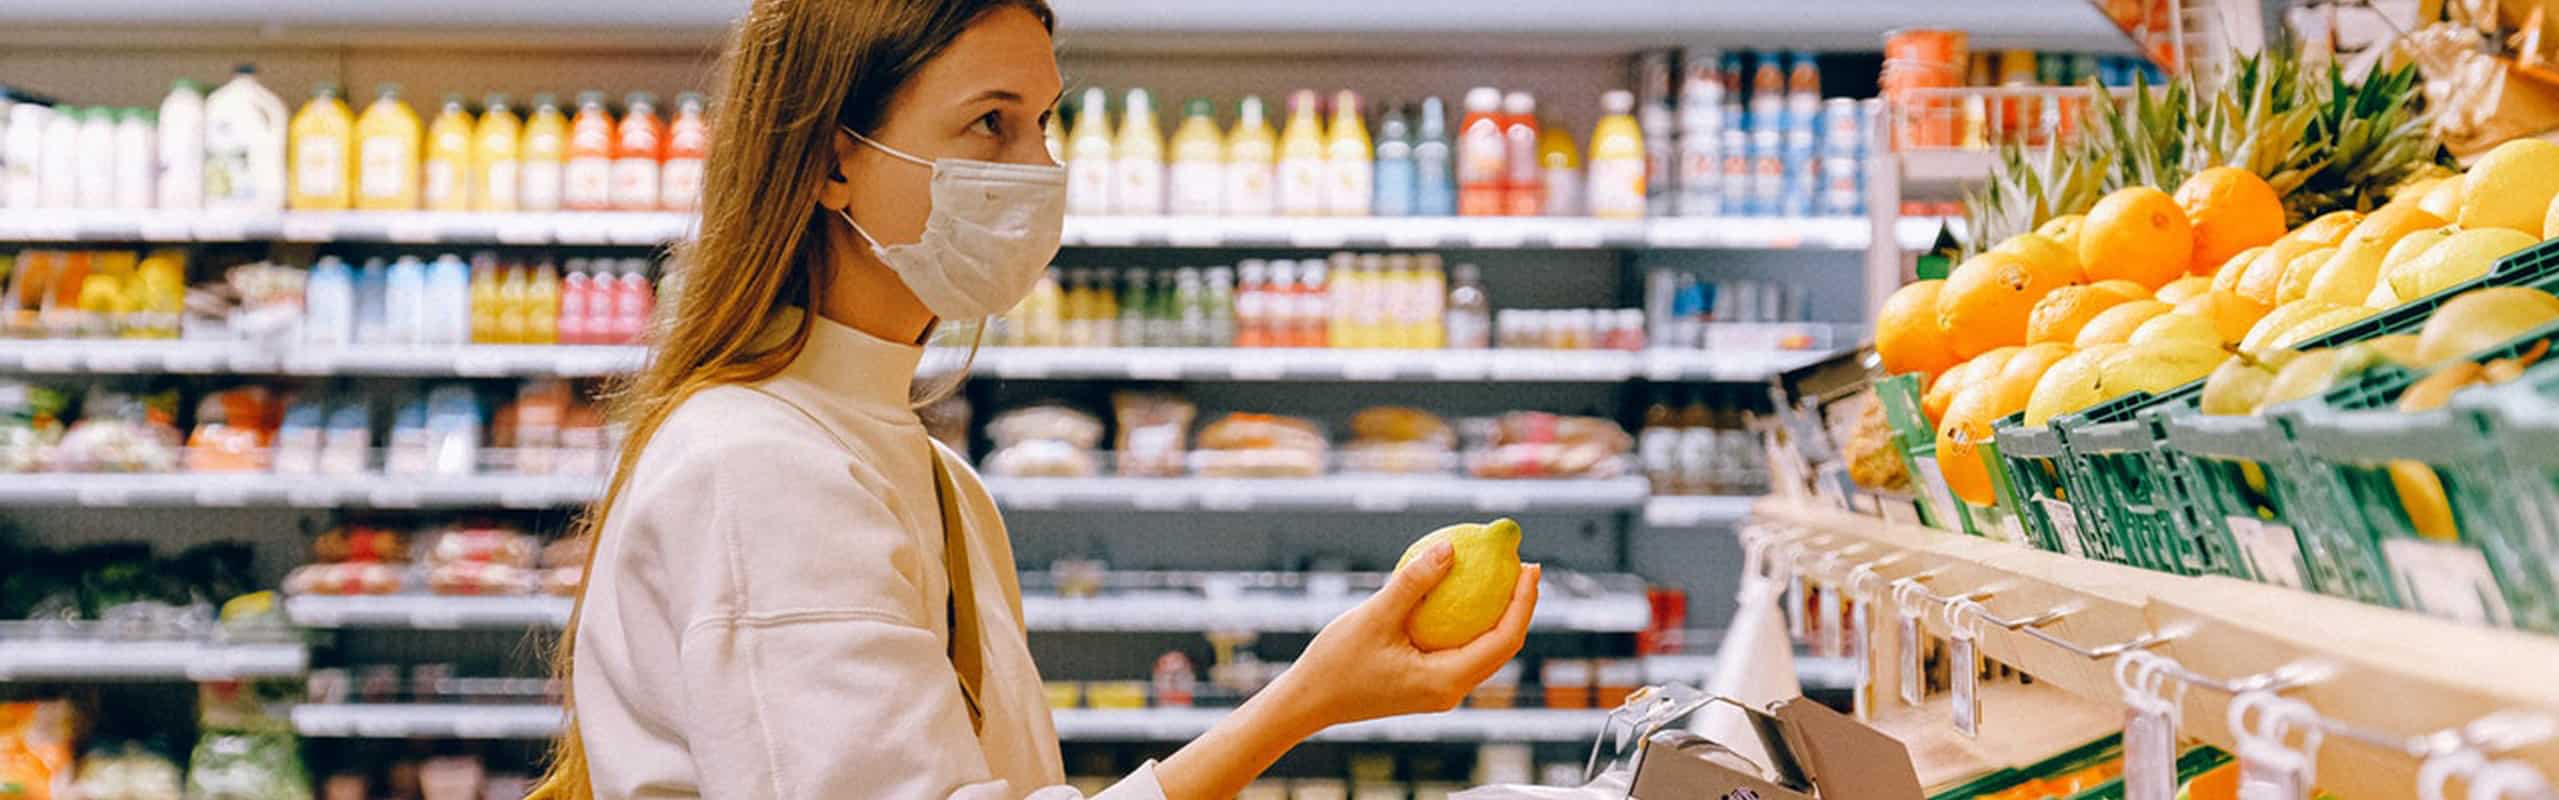 Descubre cómo la logística y las empresas logran abastecer supermercados y otros servicios con productos esenciales durante la crisis del coronavirus